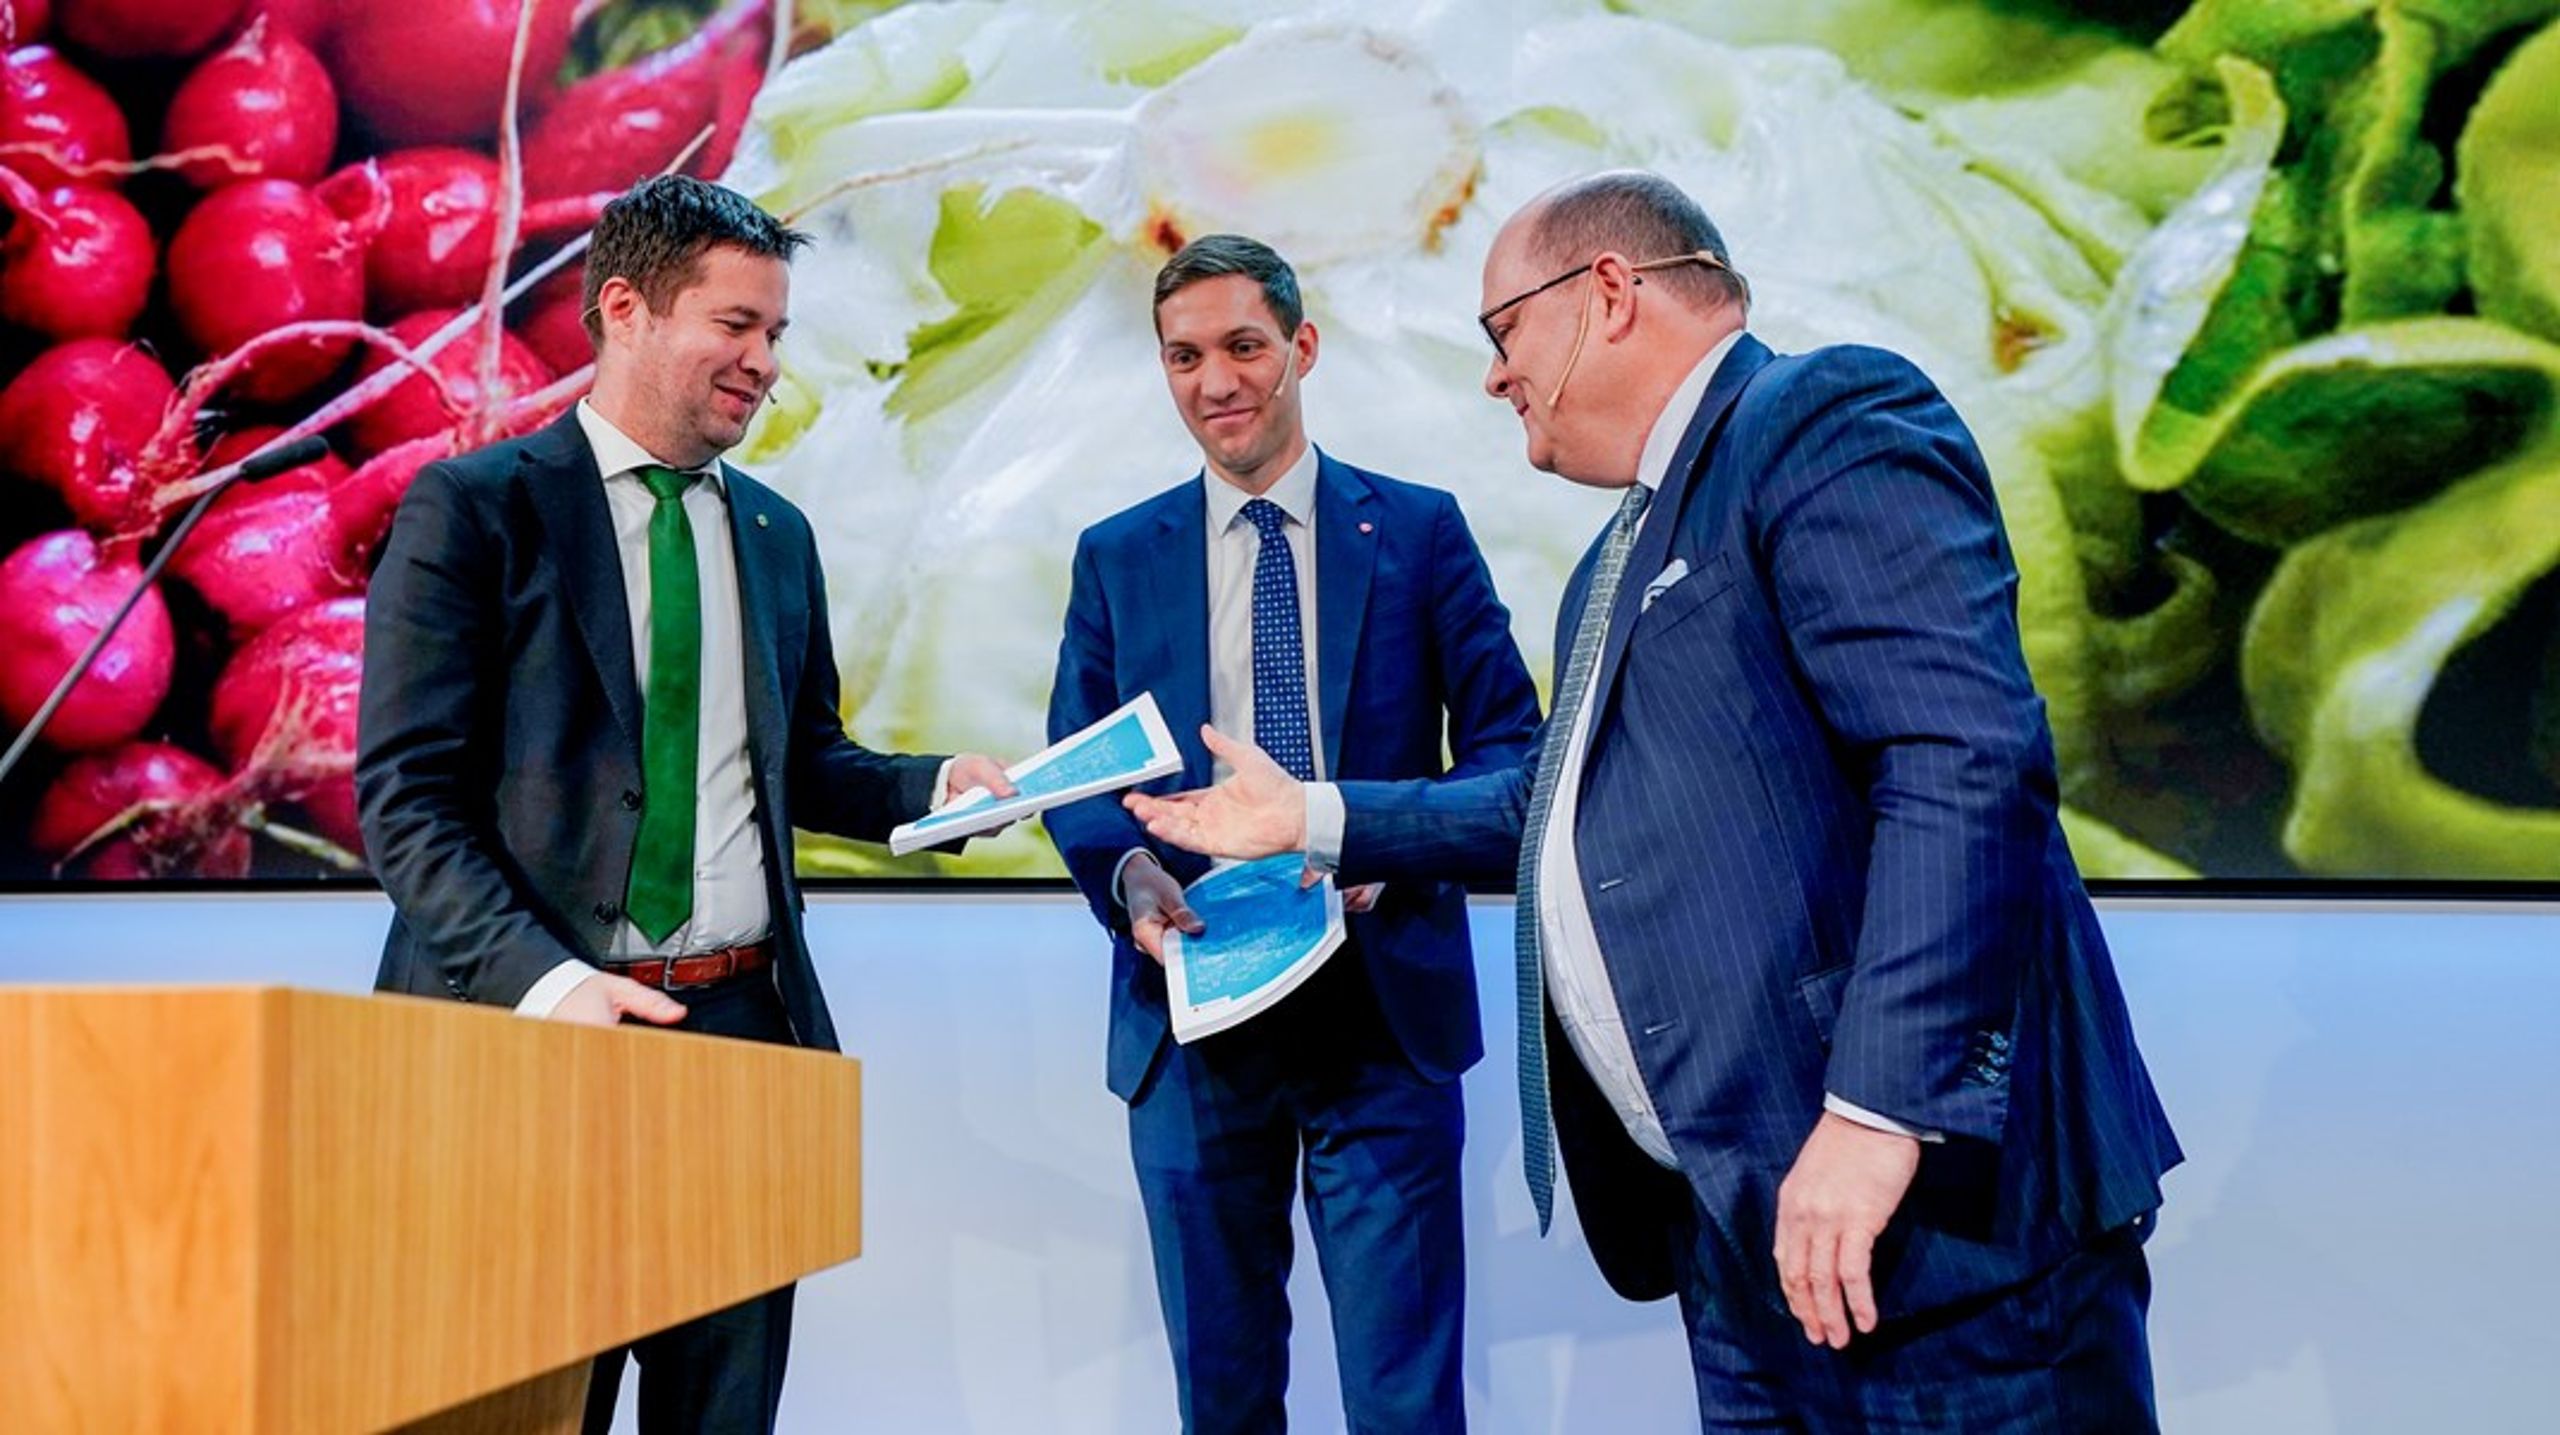 Matsvinnutvalgets leder Petter Haas Brubakk overrekker sine forslag til hvordan Norge kan halvere matsvinnet innen 2030 til klima- og miljøministeren Andreas Bjelland Eriksen (Ap) og landbruks- og matministeren Geir Pollestad (Sp).